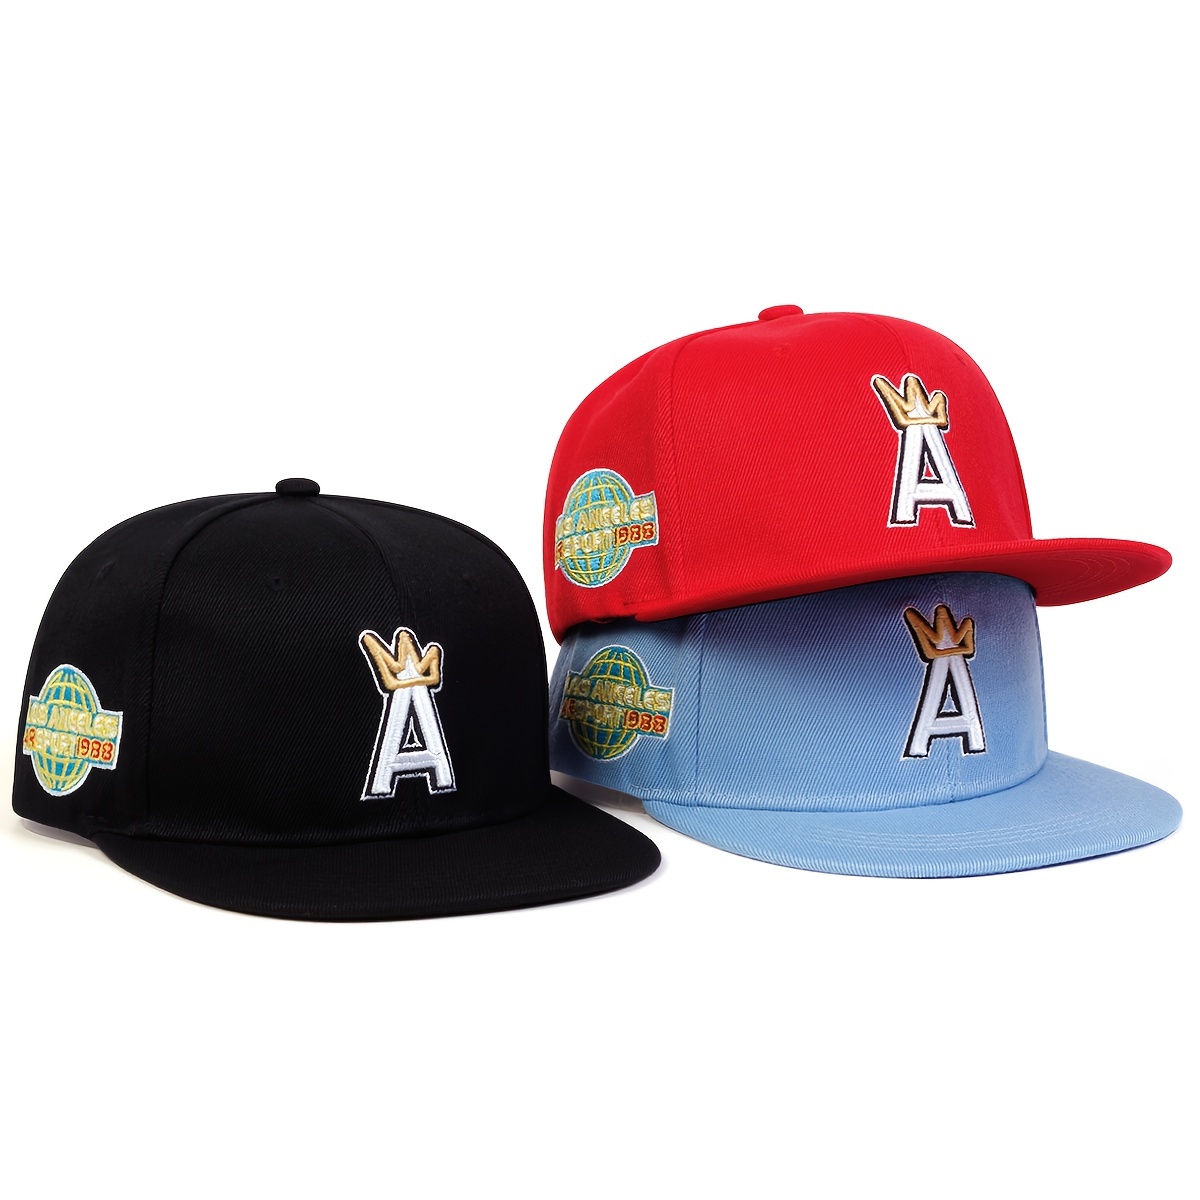 Gorra de ala negra, gorra de béisbol, sombreros, ángulo, sombrero